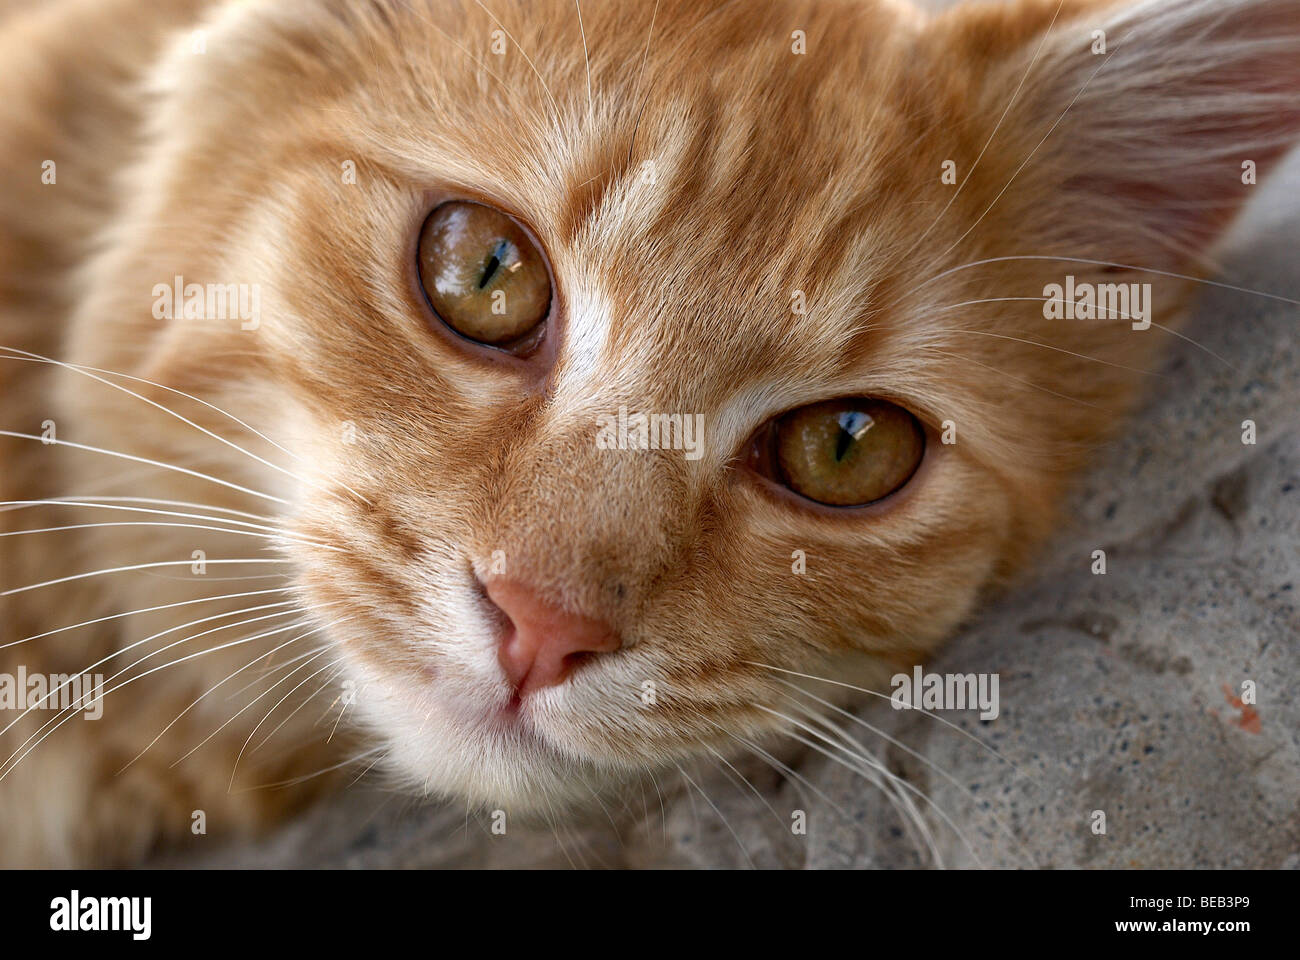 Lo zenzero gatto, Gatto, whiskers, gli occhi gialli, lion Lions Head, lion pongono, rosa naso, zenzero, regal cat, gatti occhi, occhi di gatto, close-up Foto Stock